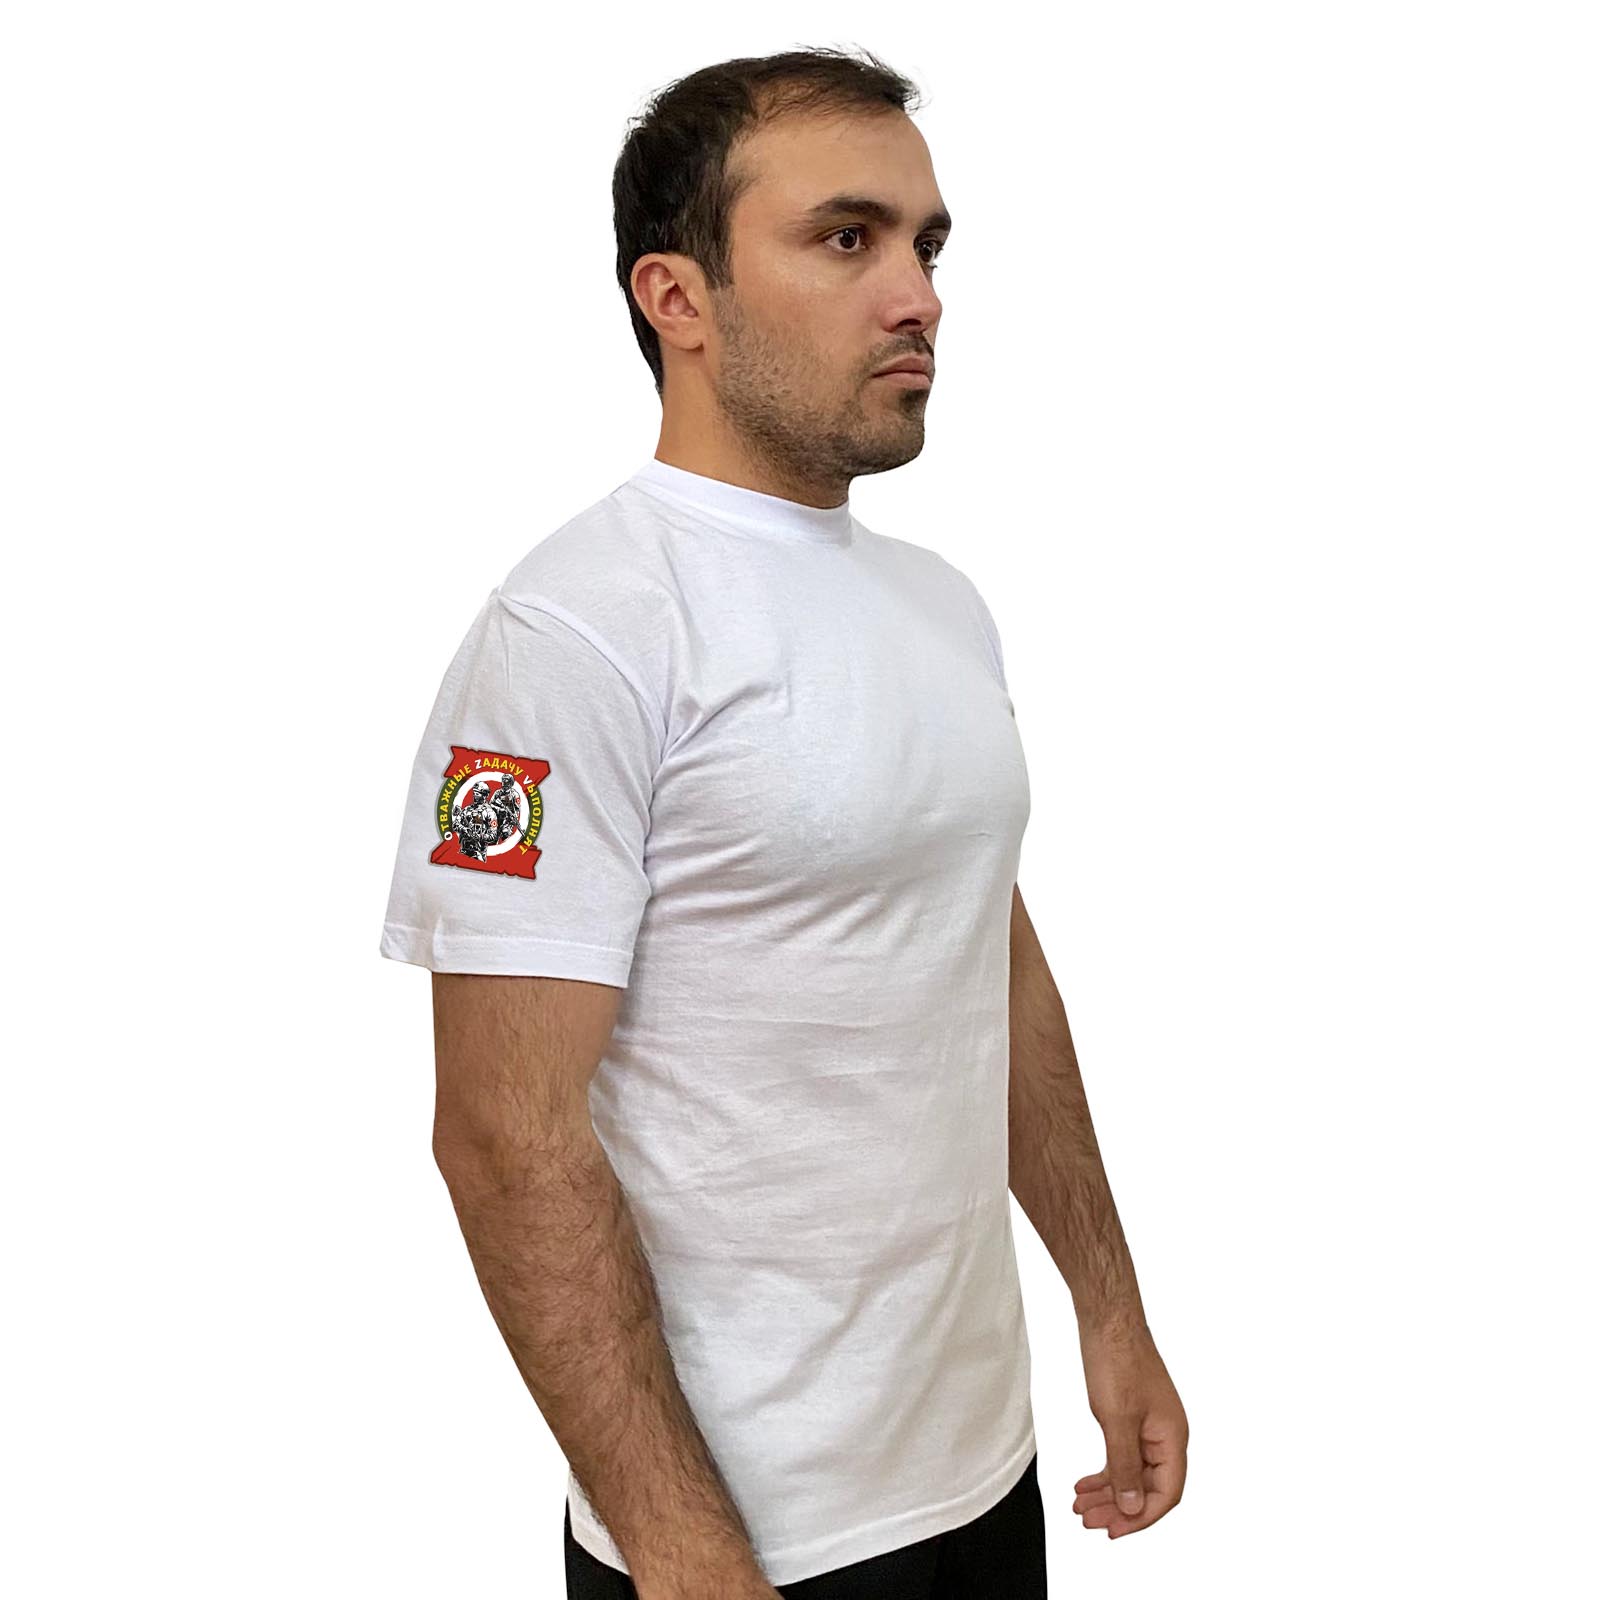 Белая футболка с термотрансфером "Отважные Zадачу Vыполнят" на рукаве